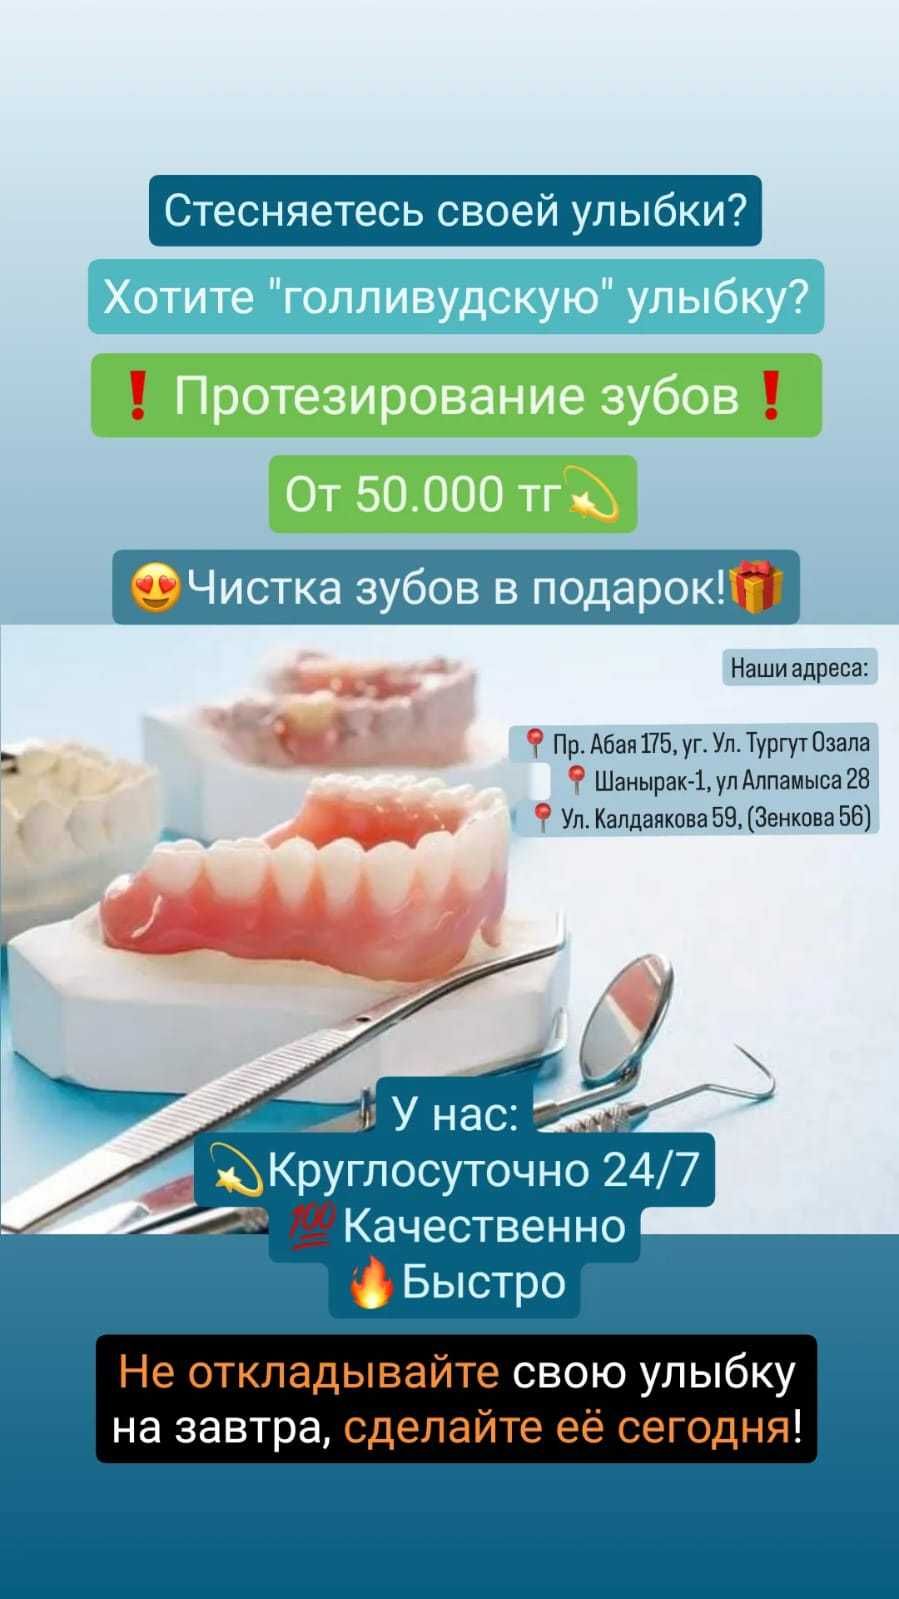 Cтоматологическая клиника круглосуточно в Алматы